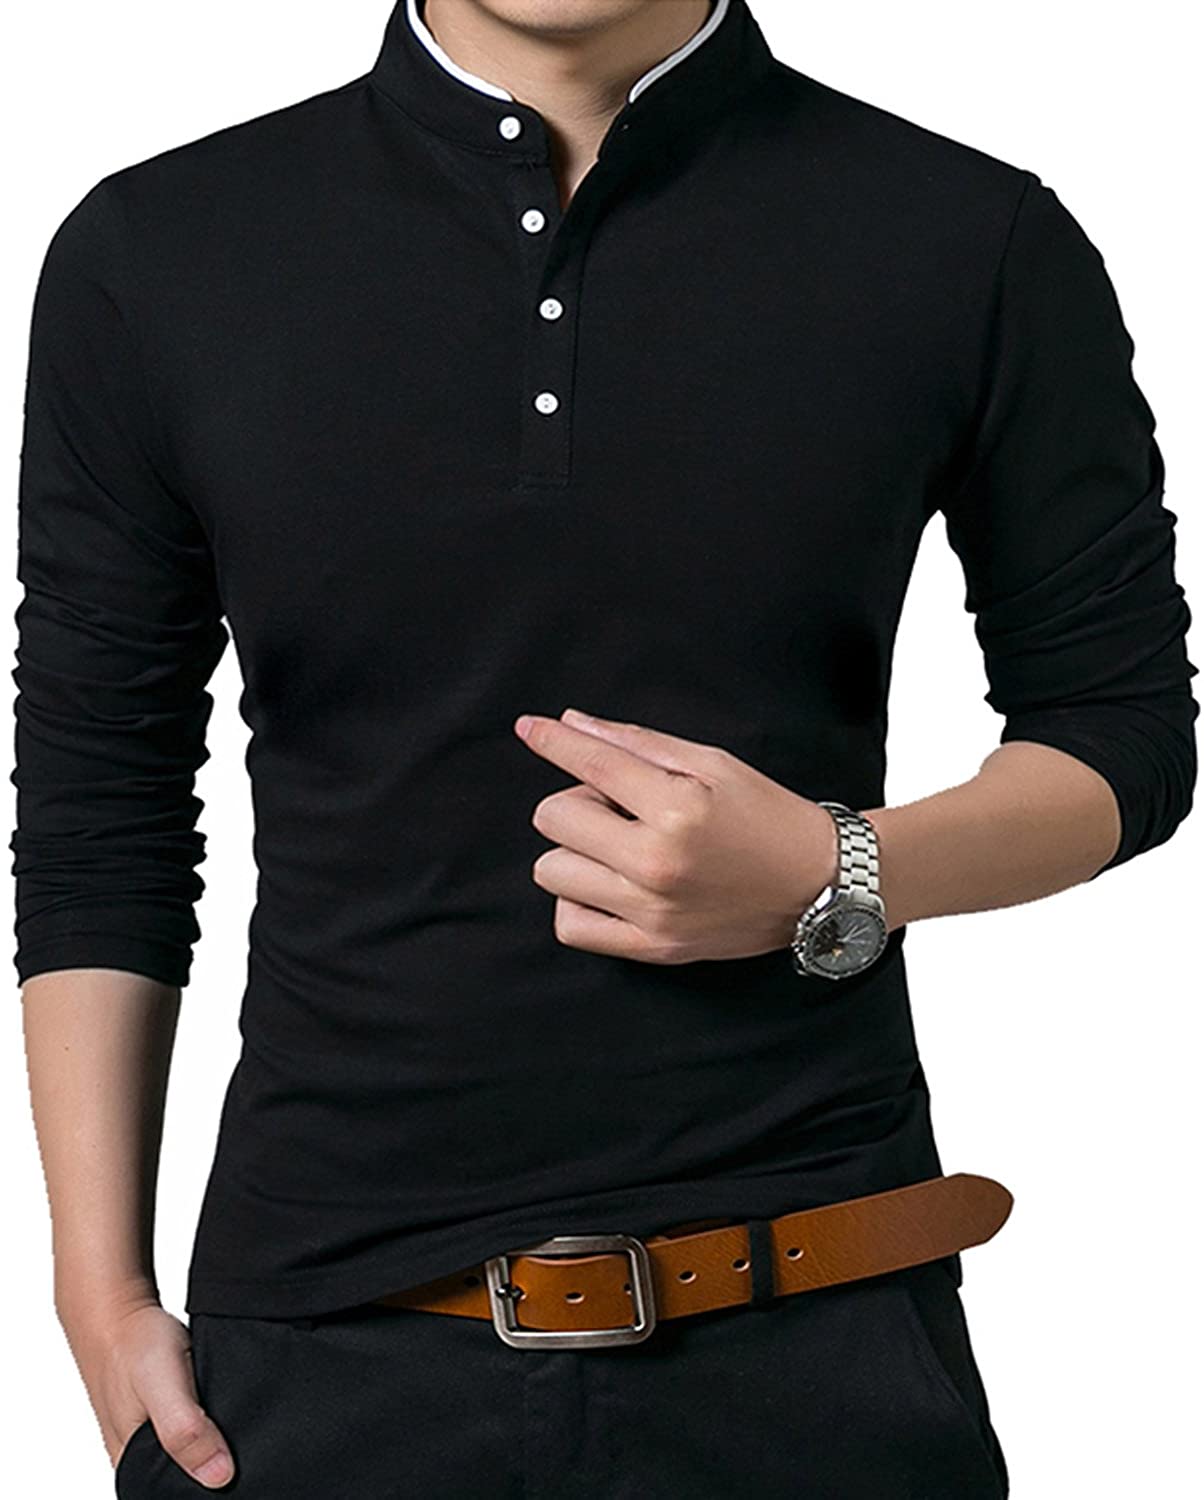 KUYIGO Men's Short & Long Sleeve Polo Shirts Casual Slim Fit Basic Designed Cotton Shirts 